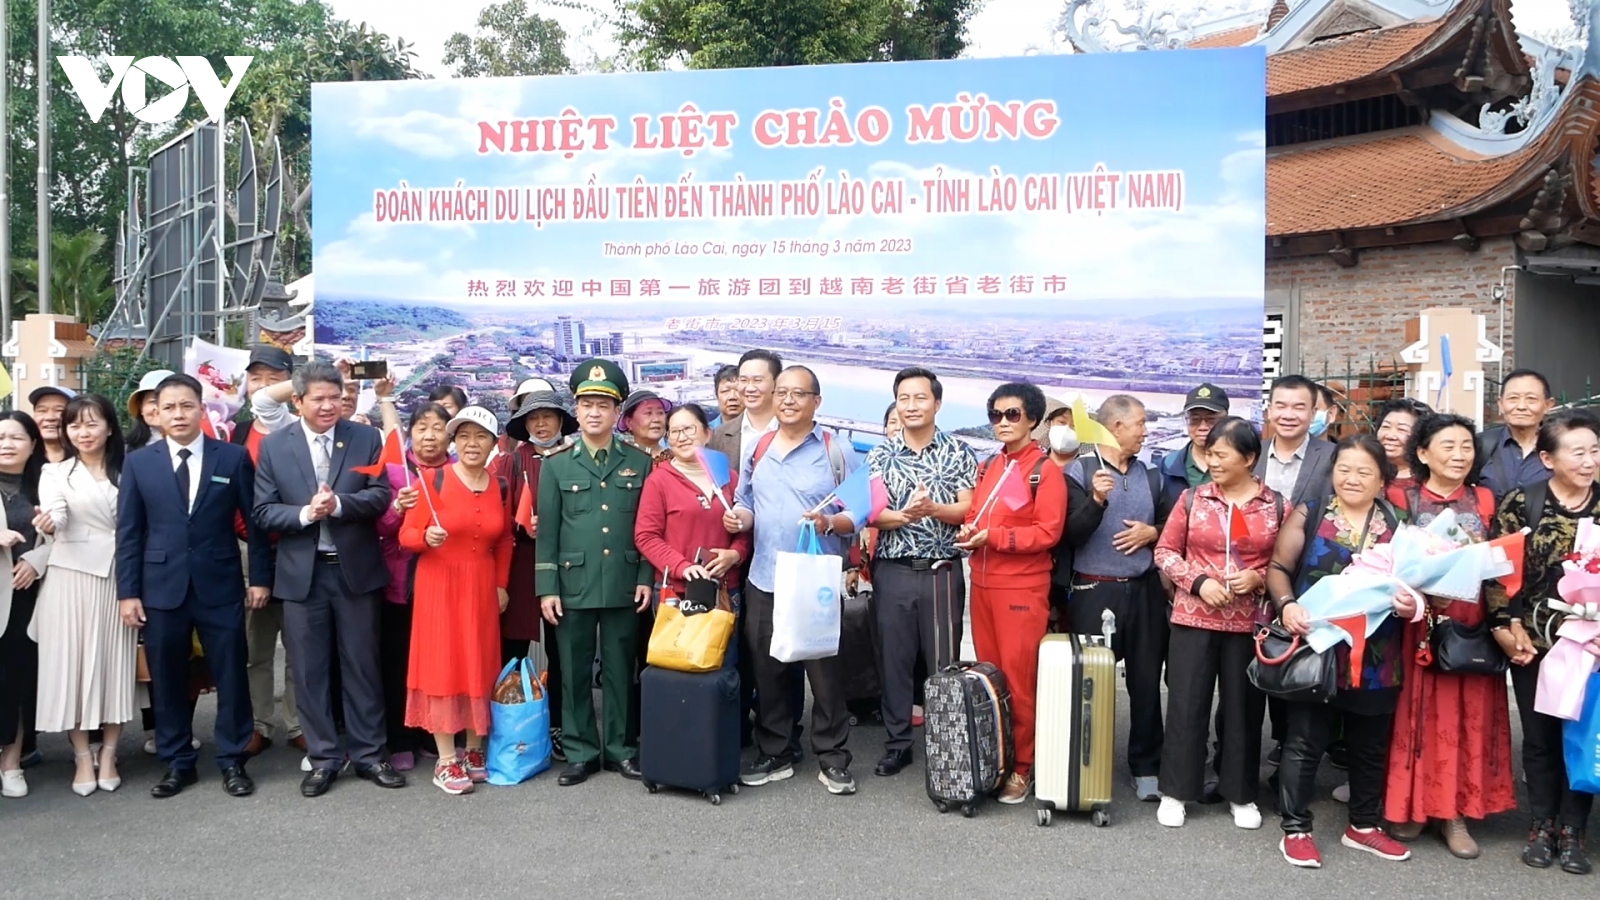 80 khách Trung Quốc đầu tiên nhập cảnh vào Lào Cai tham gia "tour du lịch vàng"